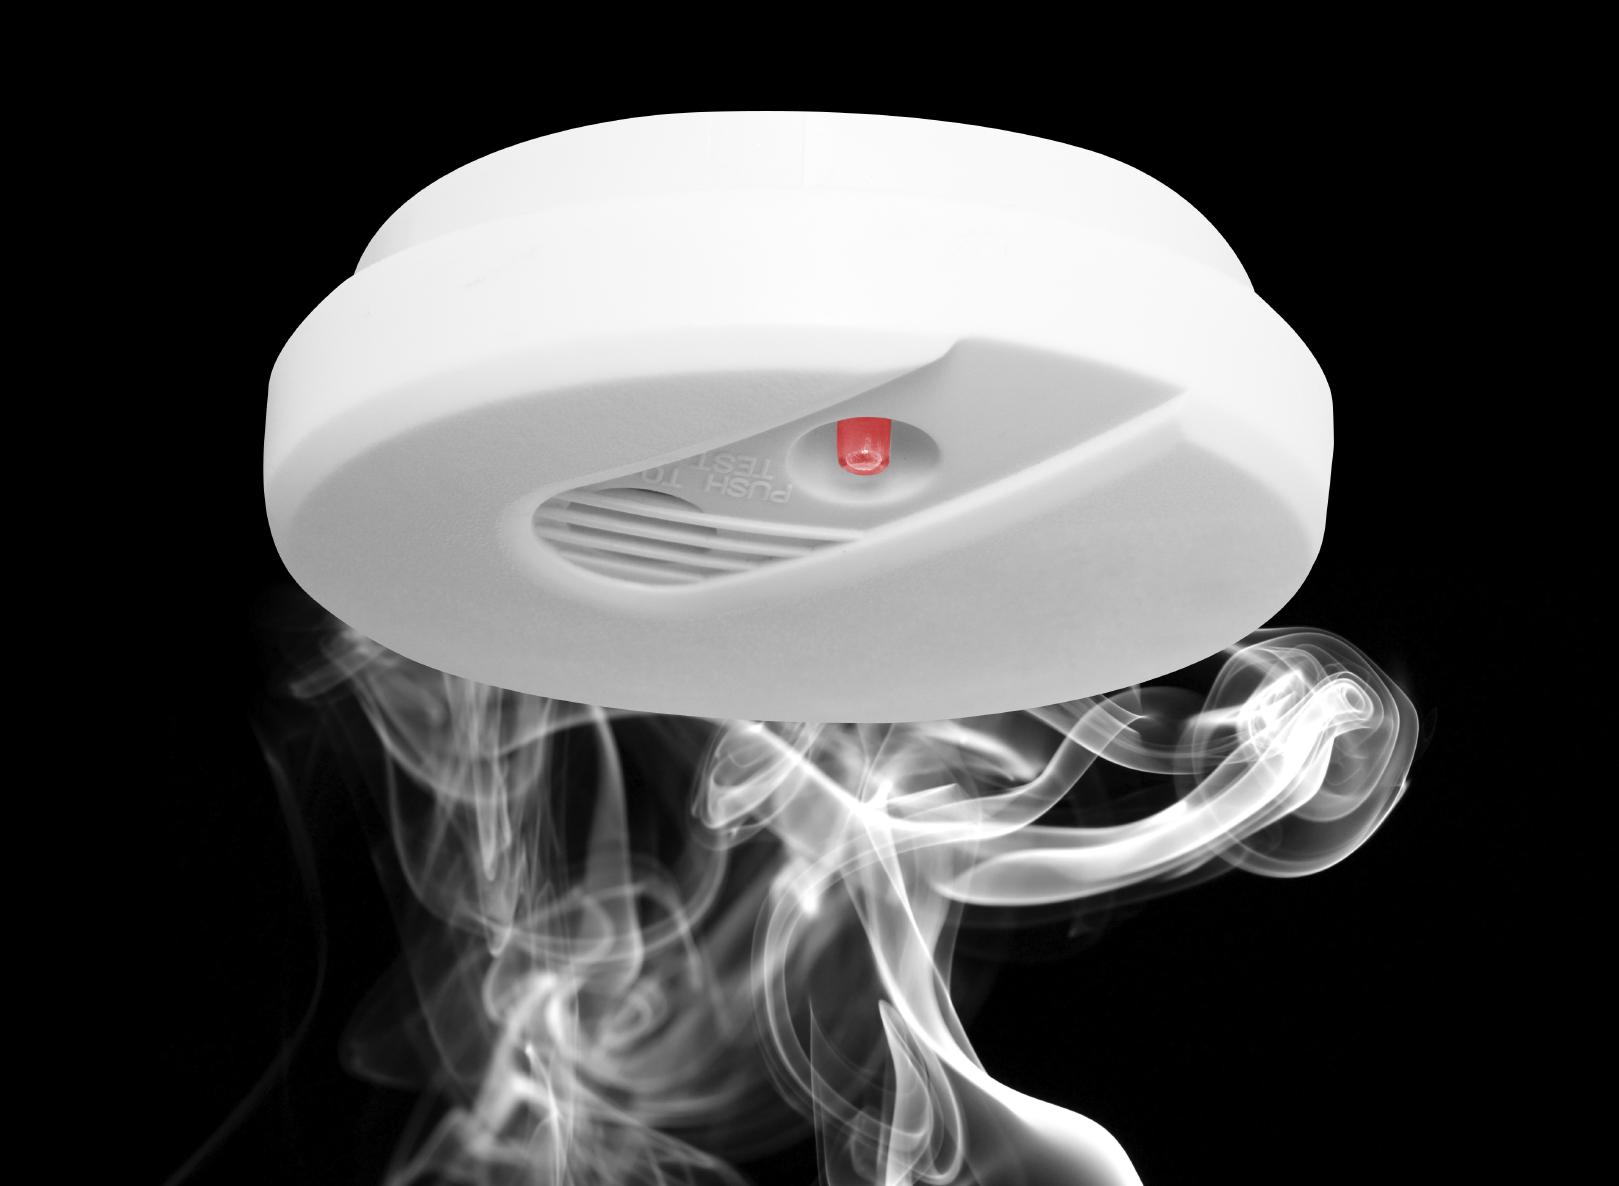 Working smoke alarms save lives